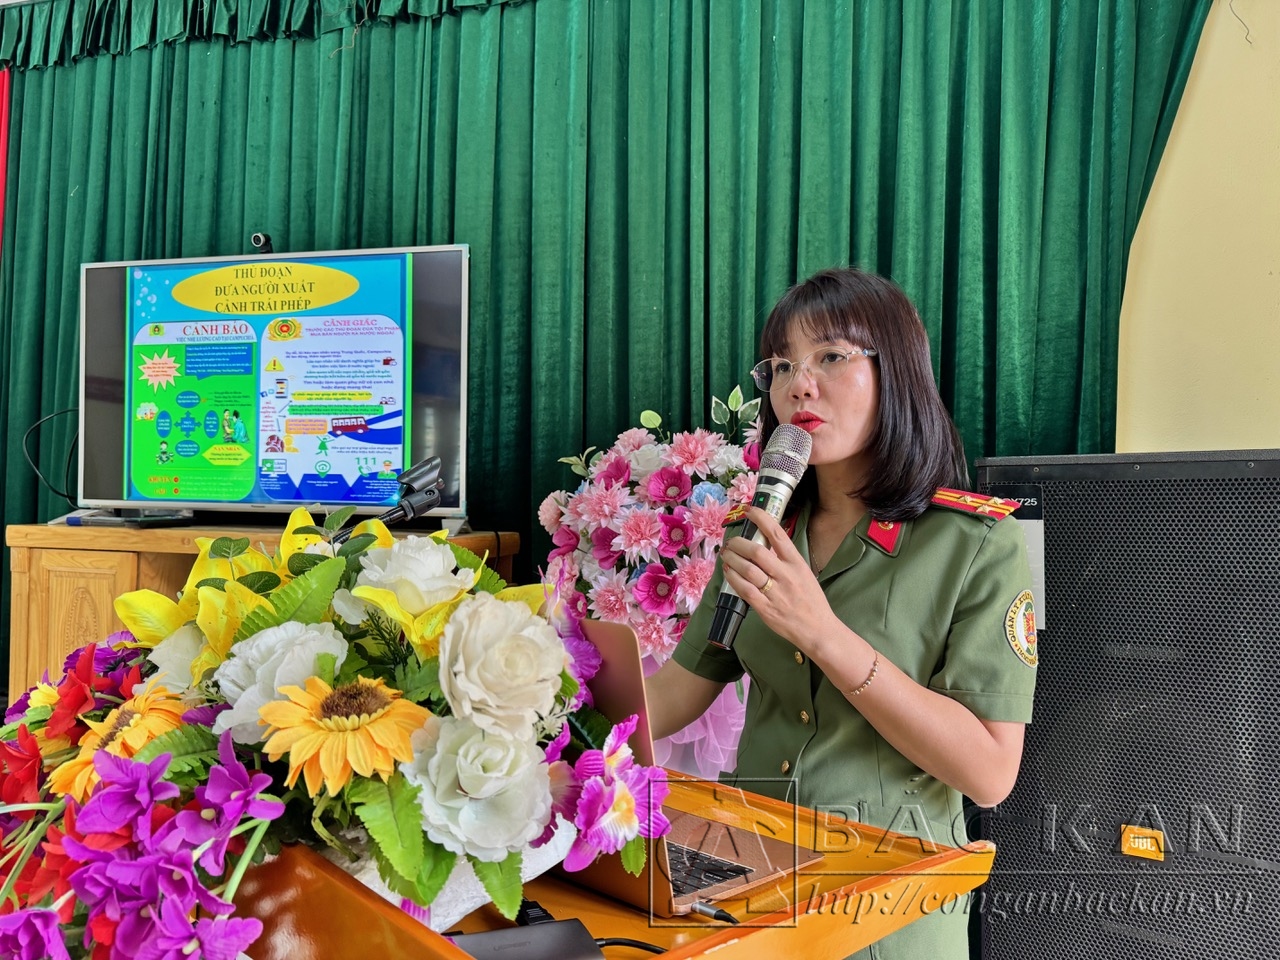 Thượng tá Nông Thị Thoa, Phó trưởng Phòng Quản lý xuất nhập cảnh phổ biến Luật và cảnh báo về các thủ đoạn đưa người xuất cảnh trái phép